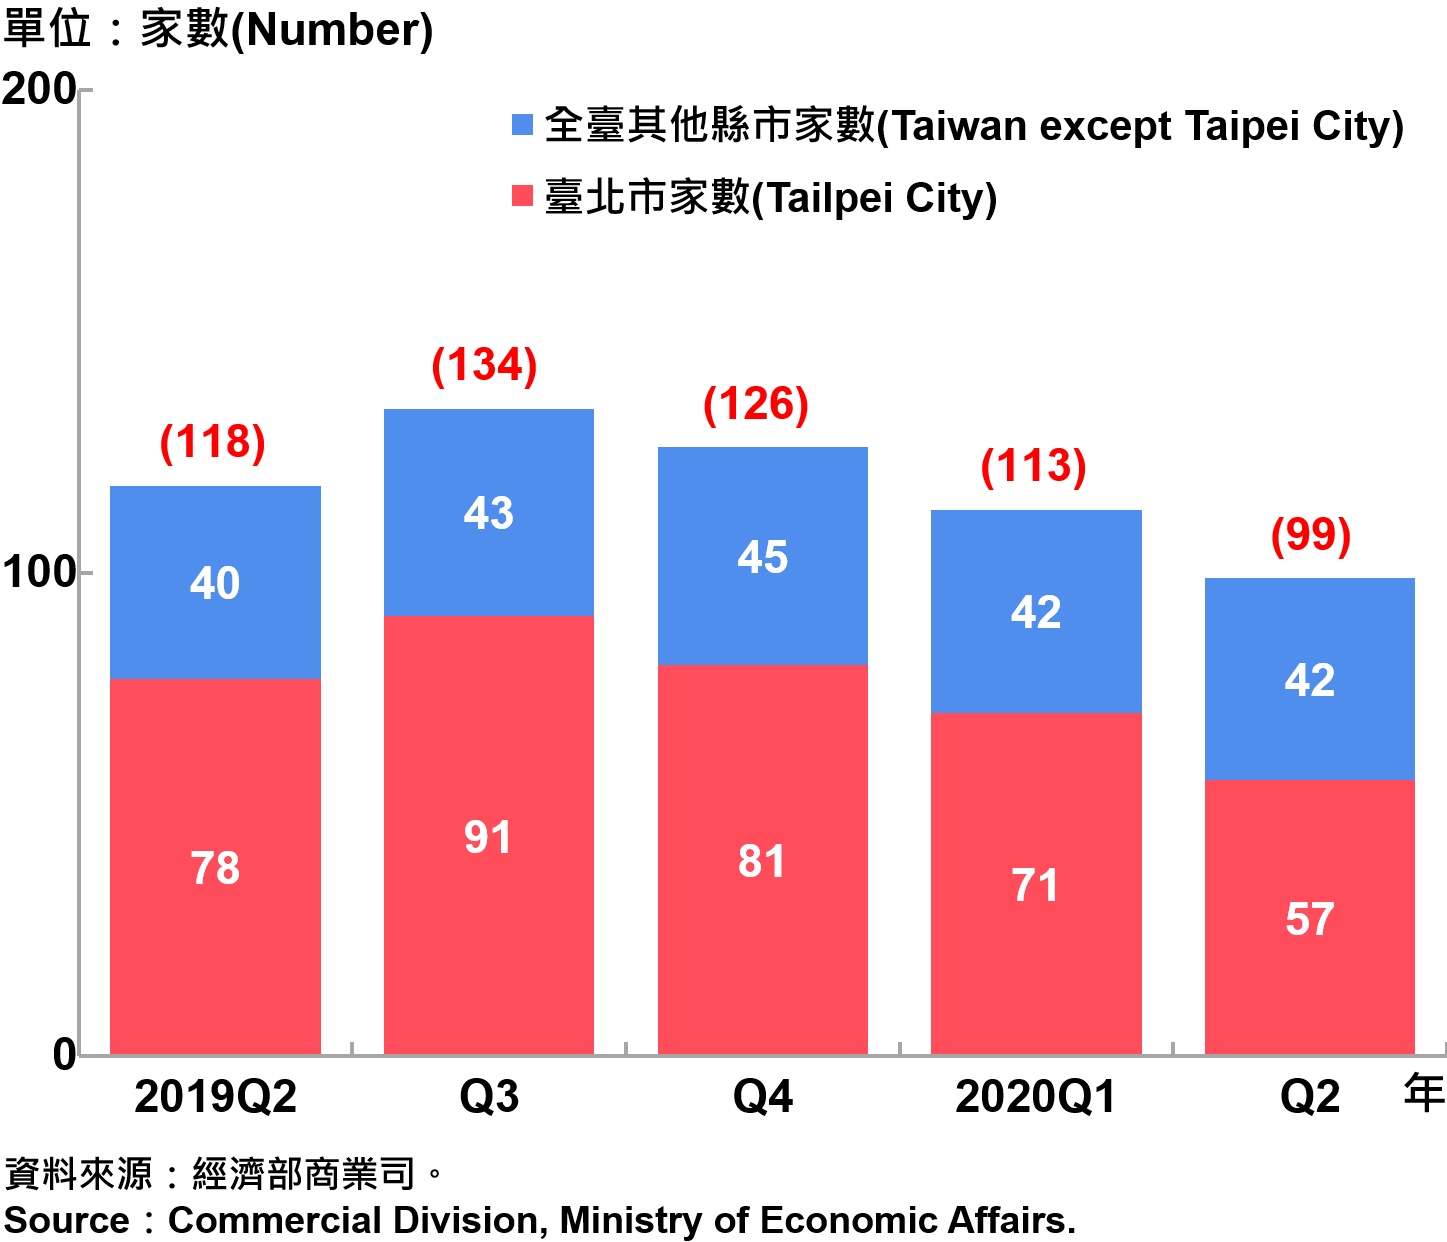 臺北市外商公司新設立家數—2020Q2 Number of Newly Established Foreign Companies in Taipei City—2020Q2